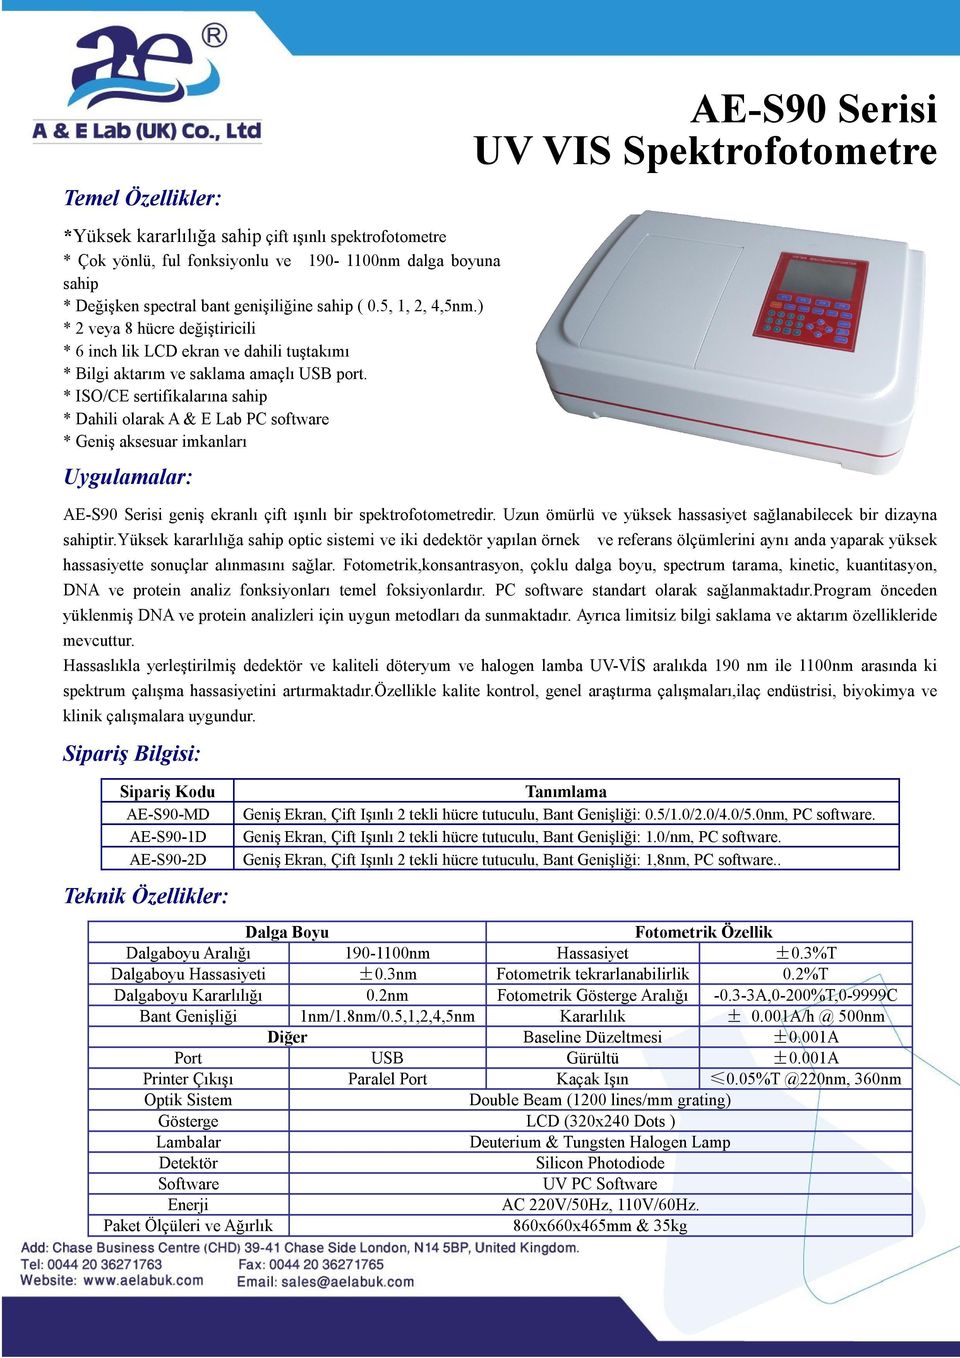 * ISO/CE sertifikalarına sahip * Dahili olarak A & E Lab PC software * Geniş aksesuar imkanları Uygulamalar: AE-S90 Serisi geniş ekranlı çift ışınlı bir spektrofotometredir.